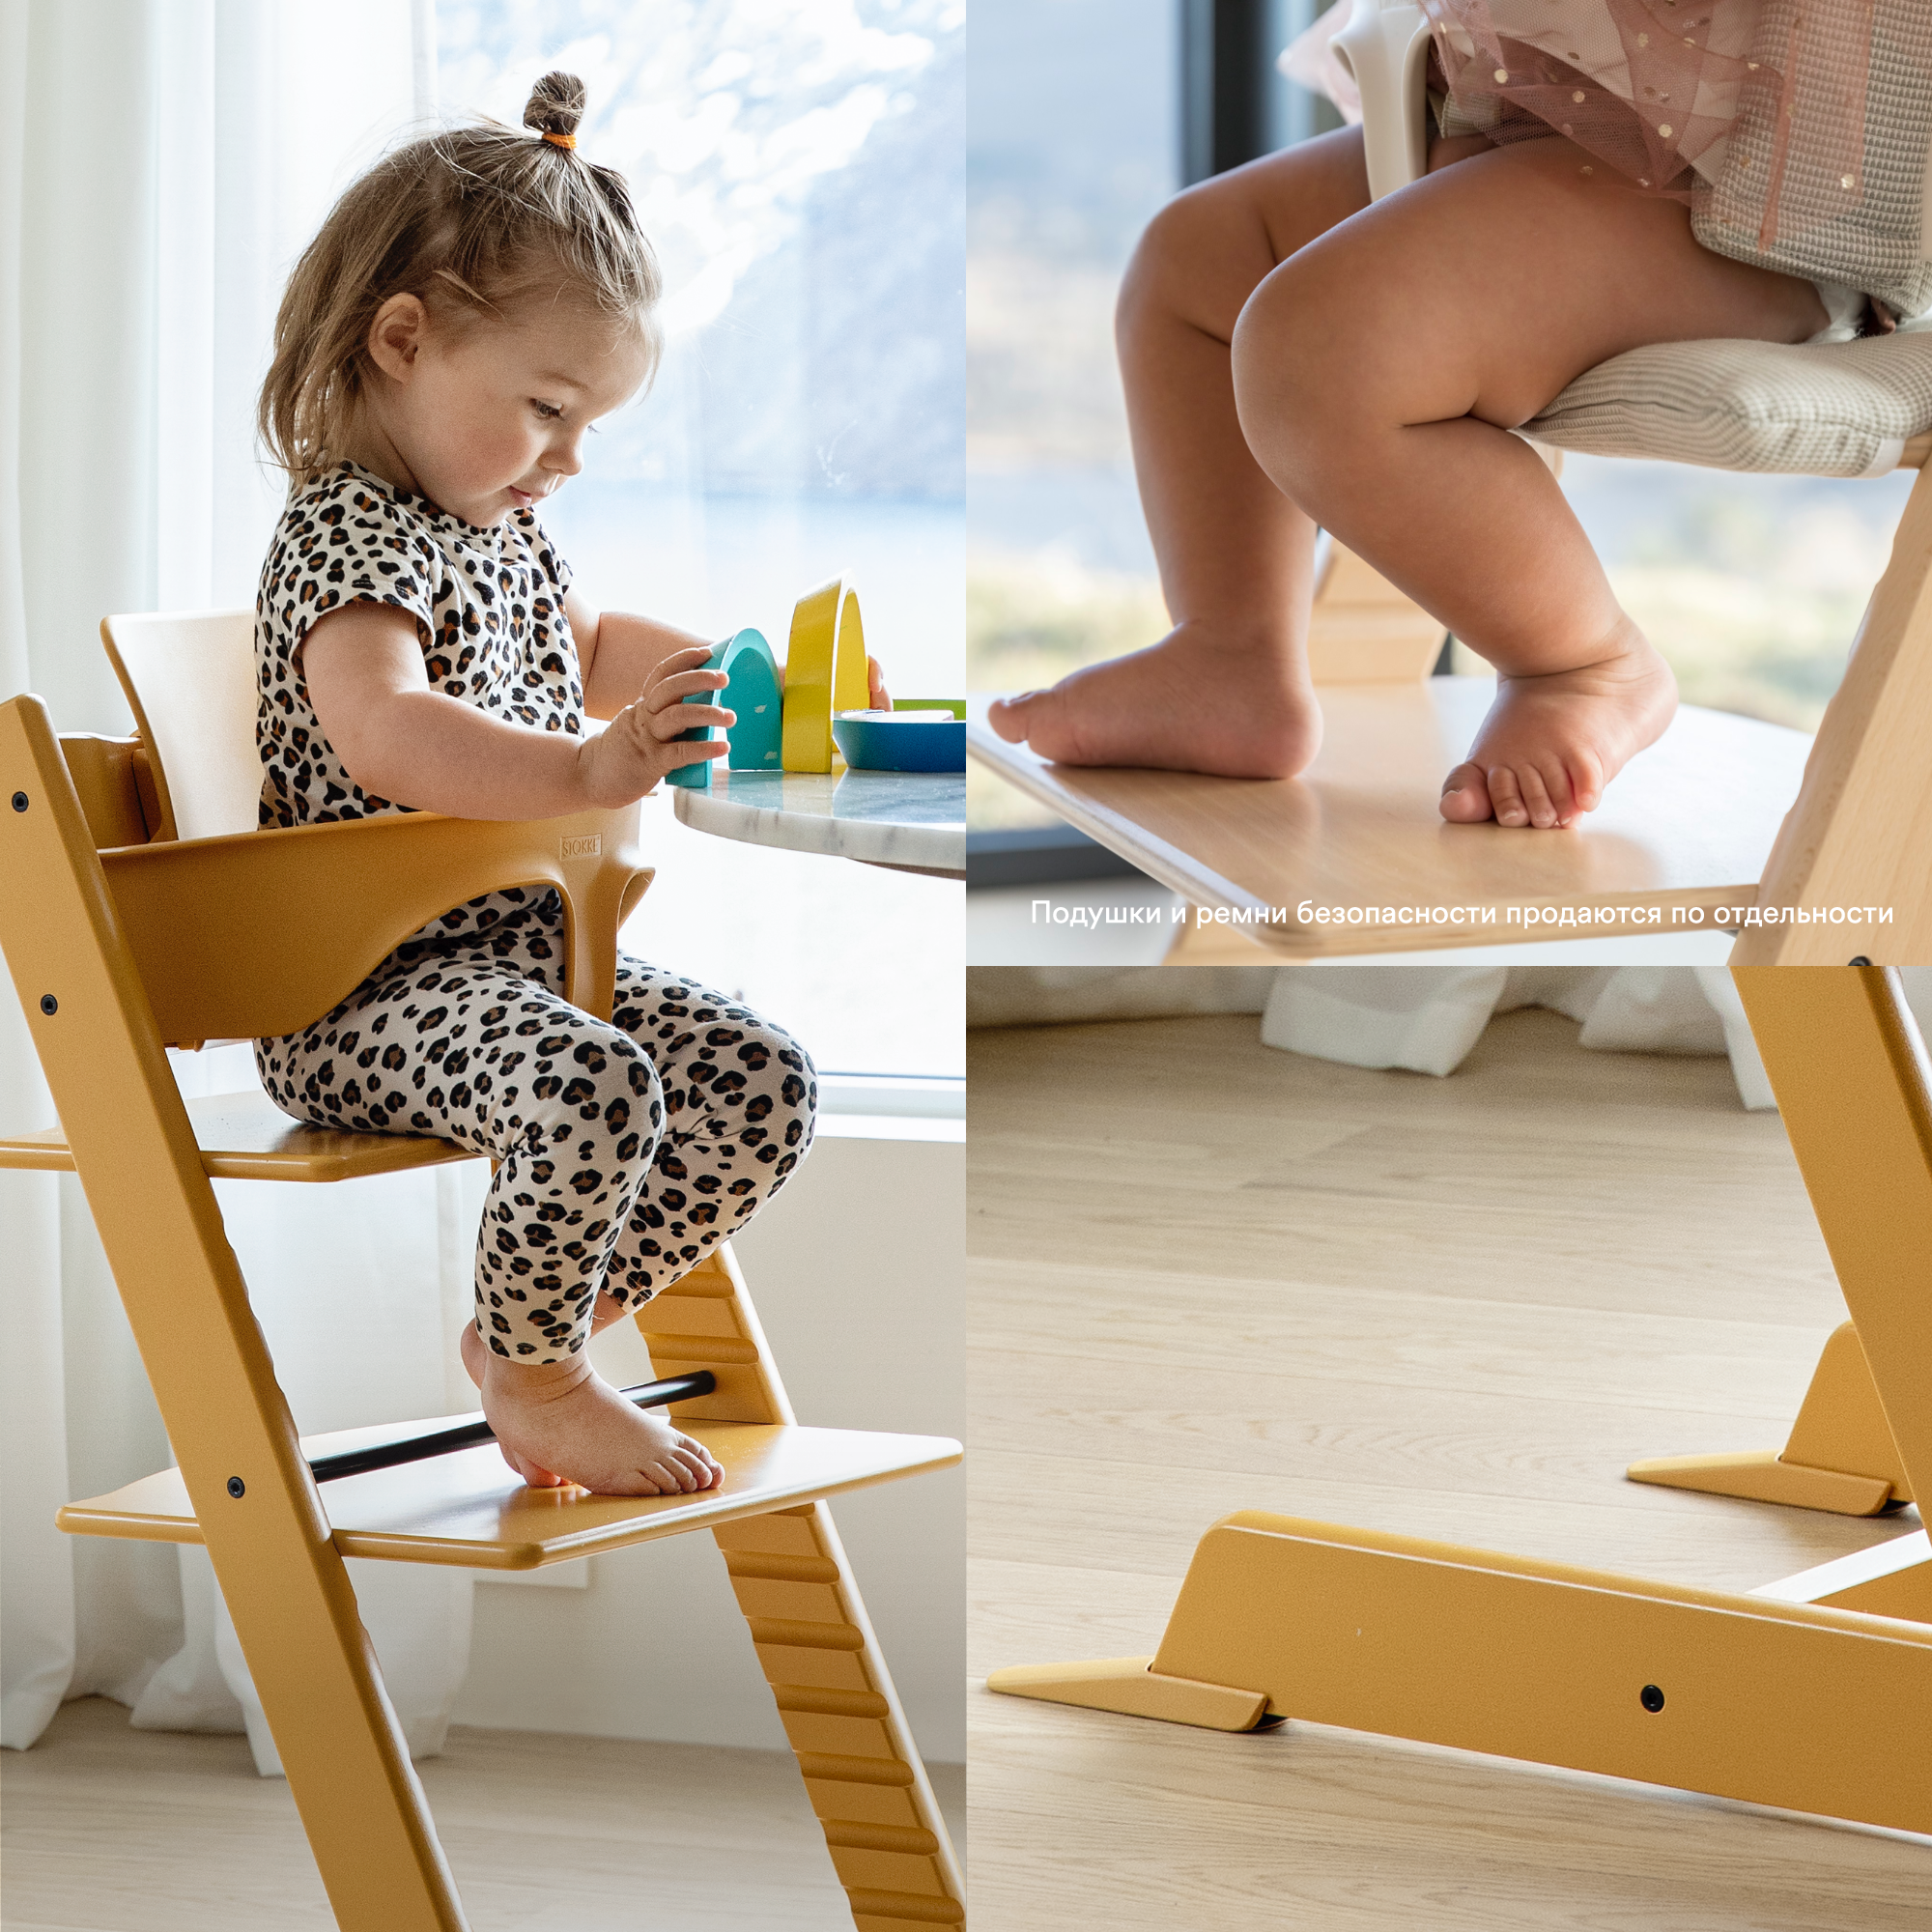 Набор Stokke Baby Set Tripp Trapp Natural: стульчик и спинка с ограничителем (k.100101.15) - фото 8